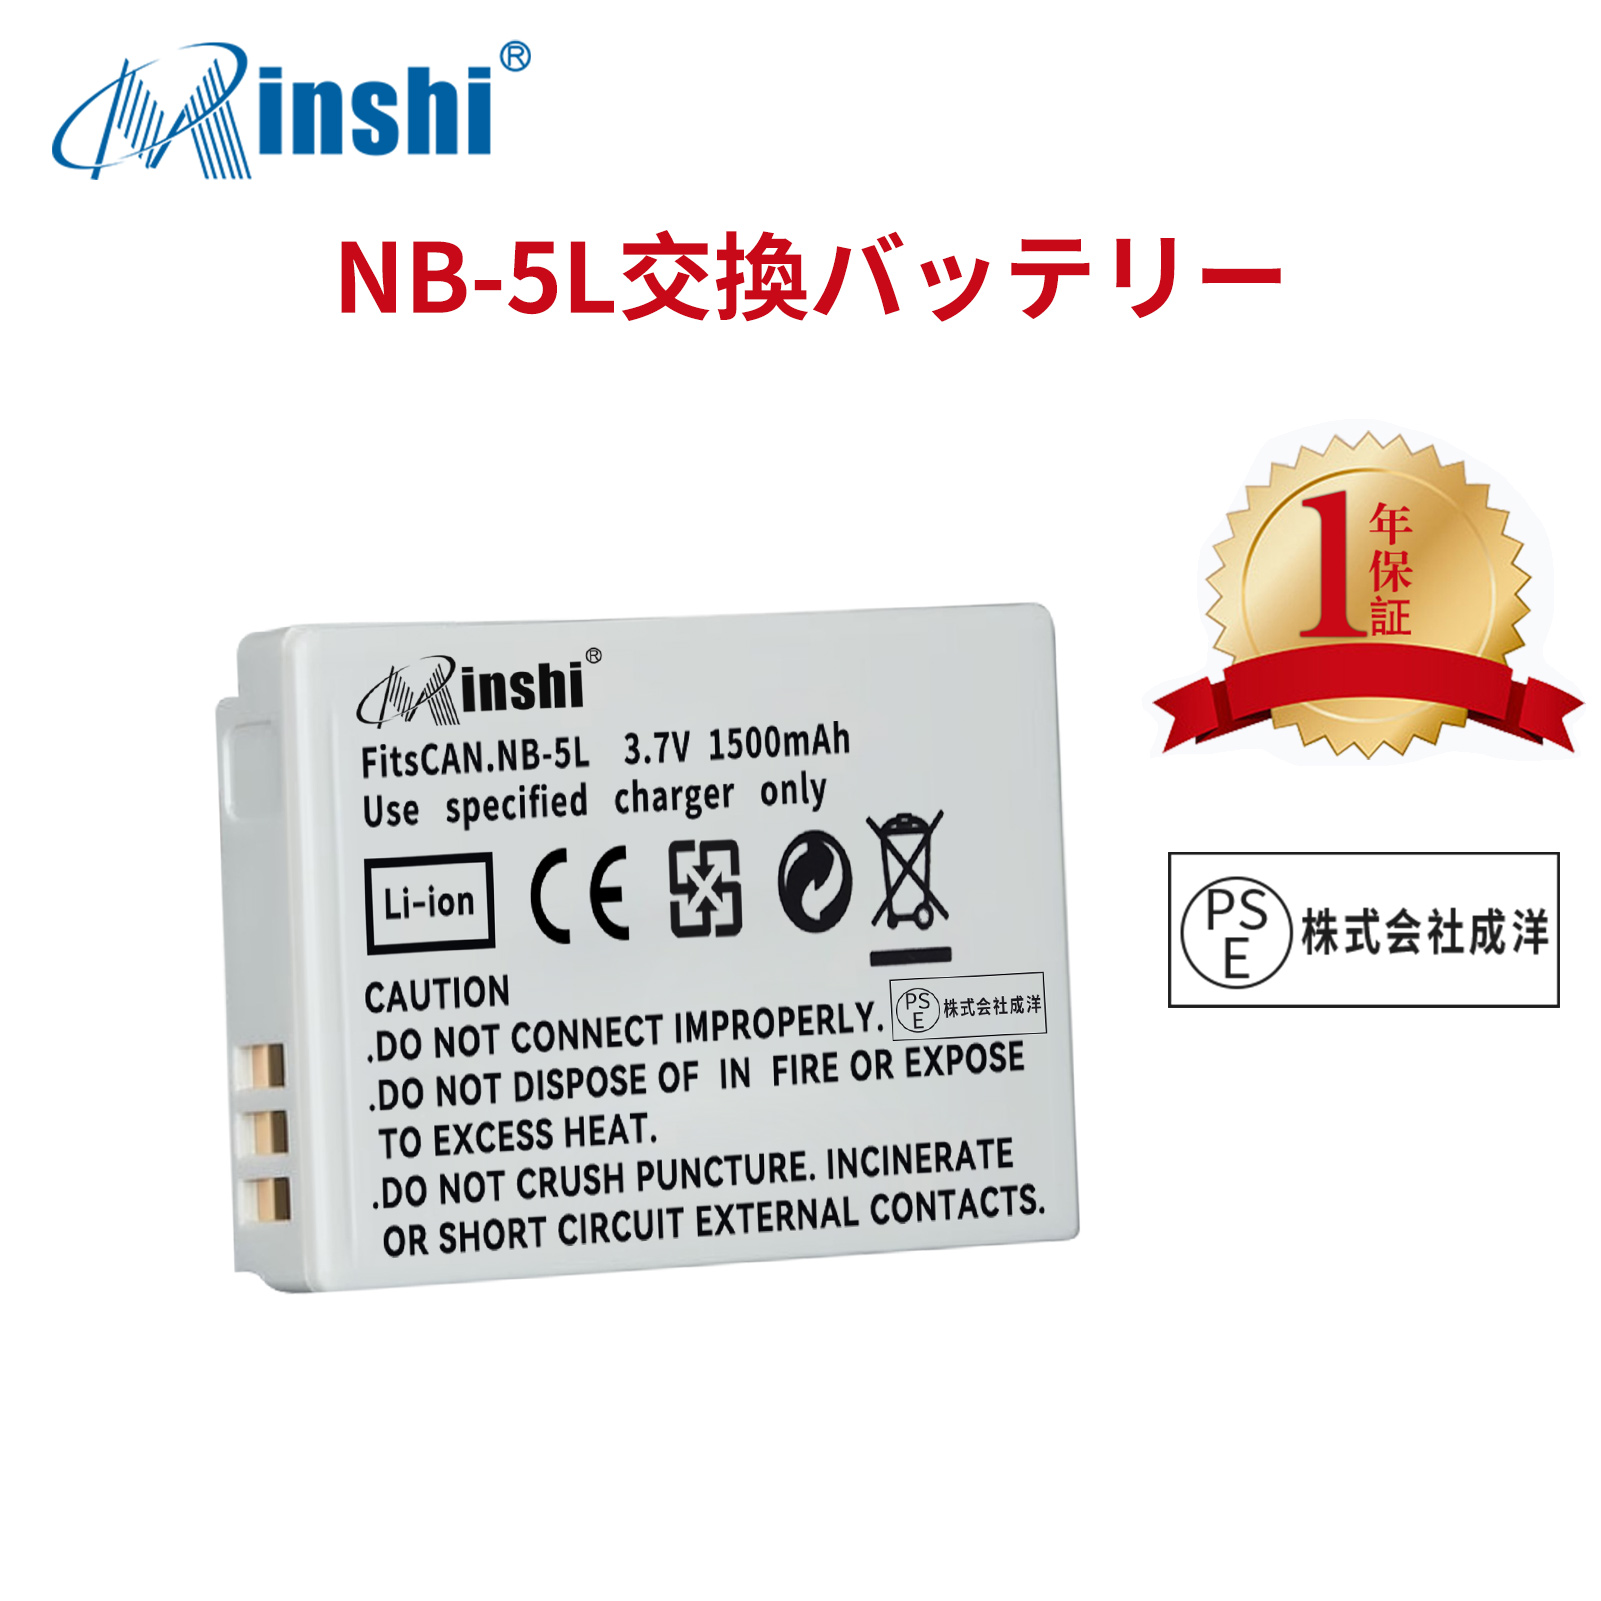 【1年保証】minshi CANON 910IS S100  【1500mAh 3.7V】PSE認定済 高品質 NB-5L 交換用バッテリー